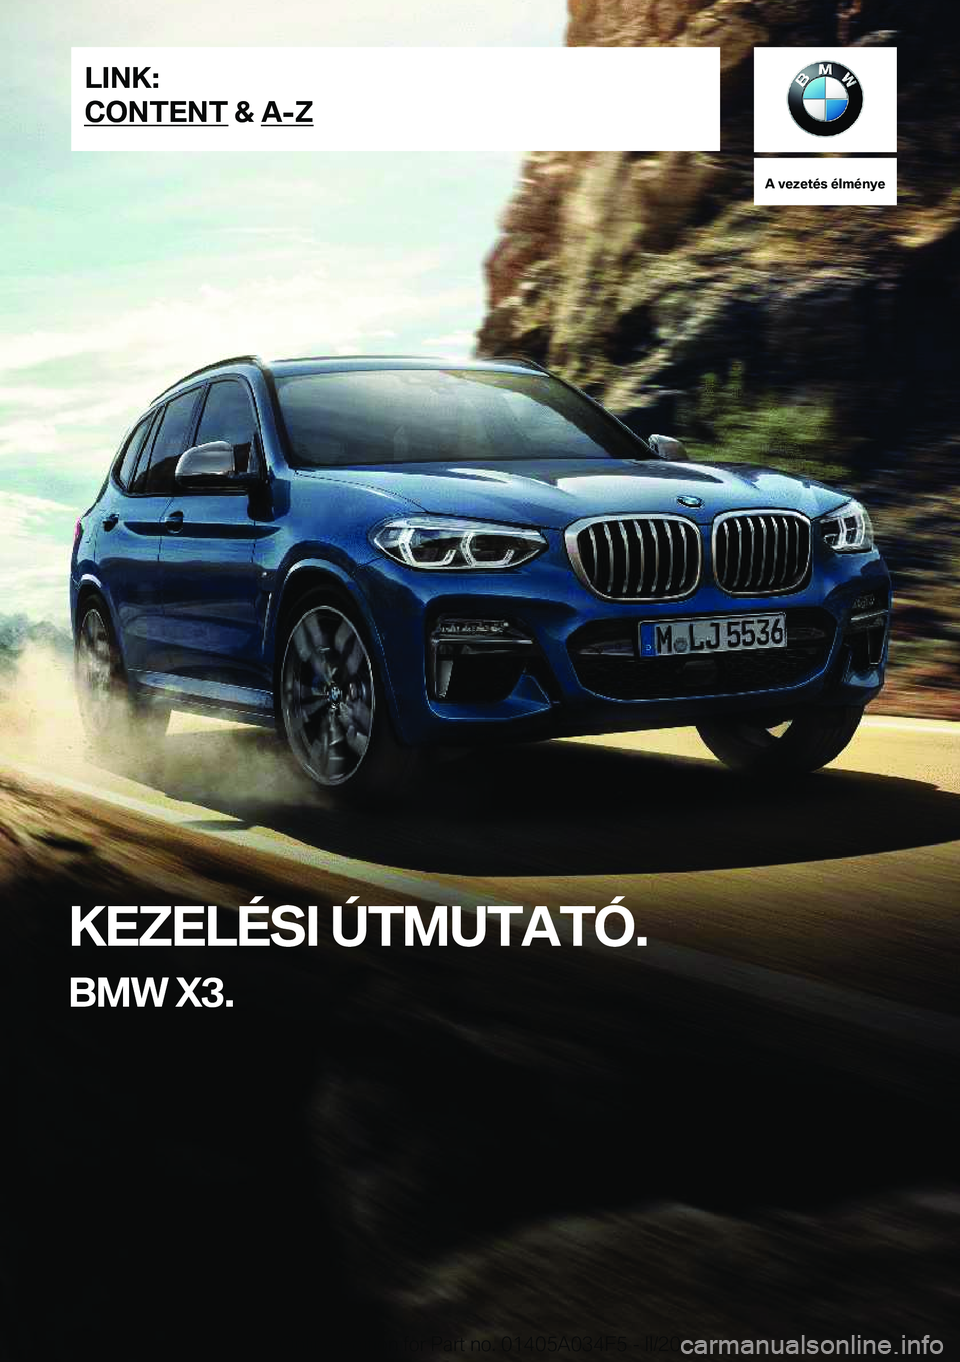 BMW X3 2020  Kezelési útmutató (in Hungarian) �A��v�e�z�e�t�